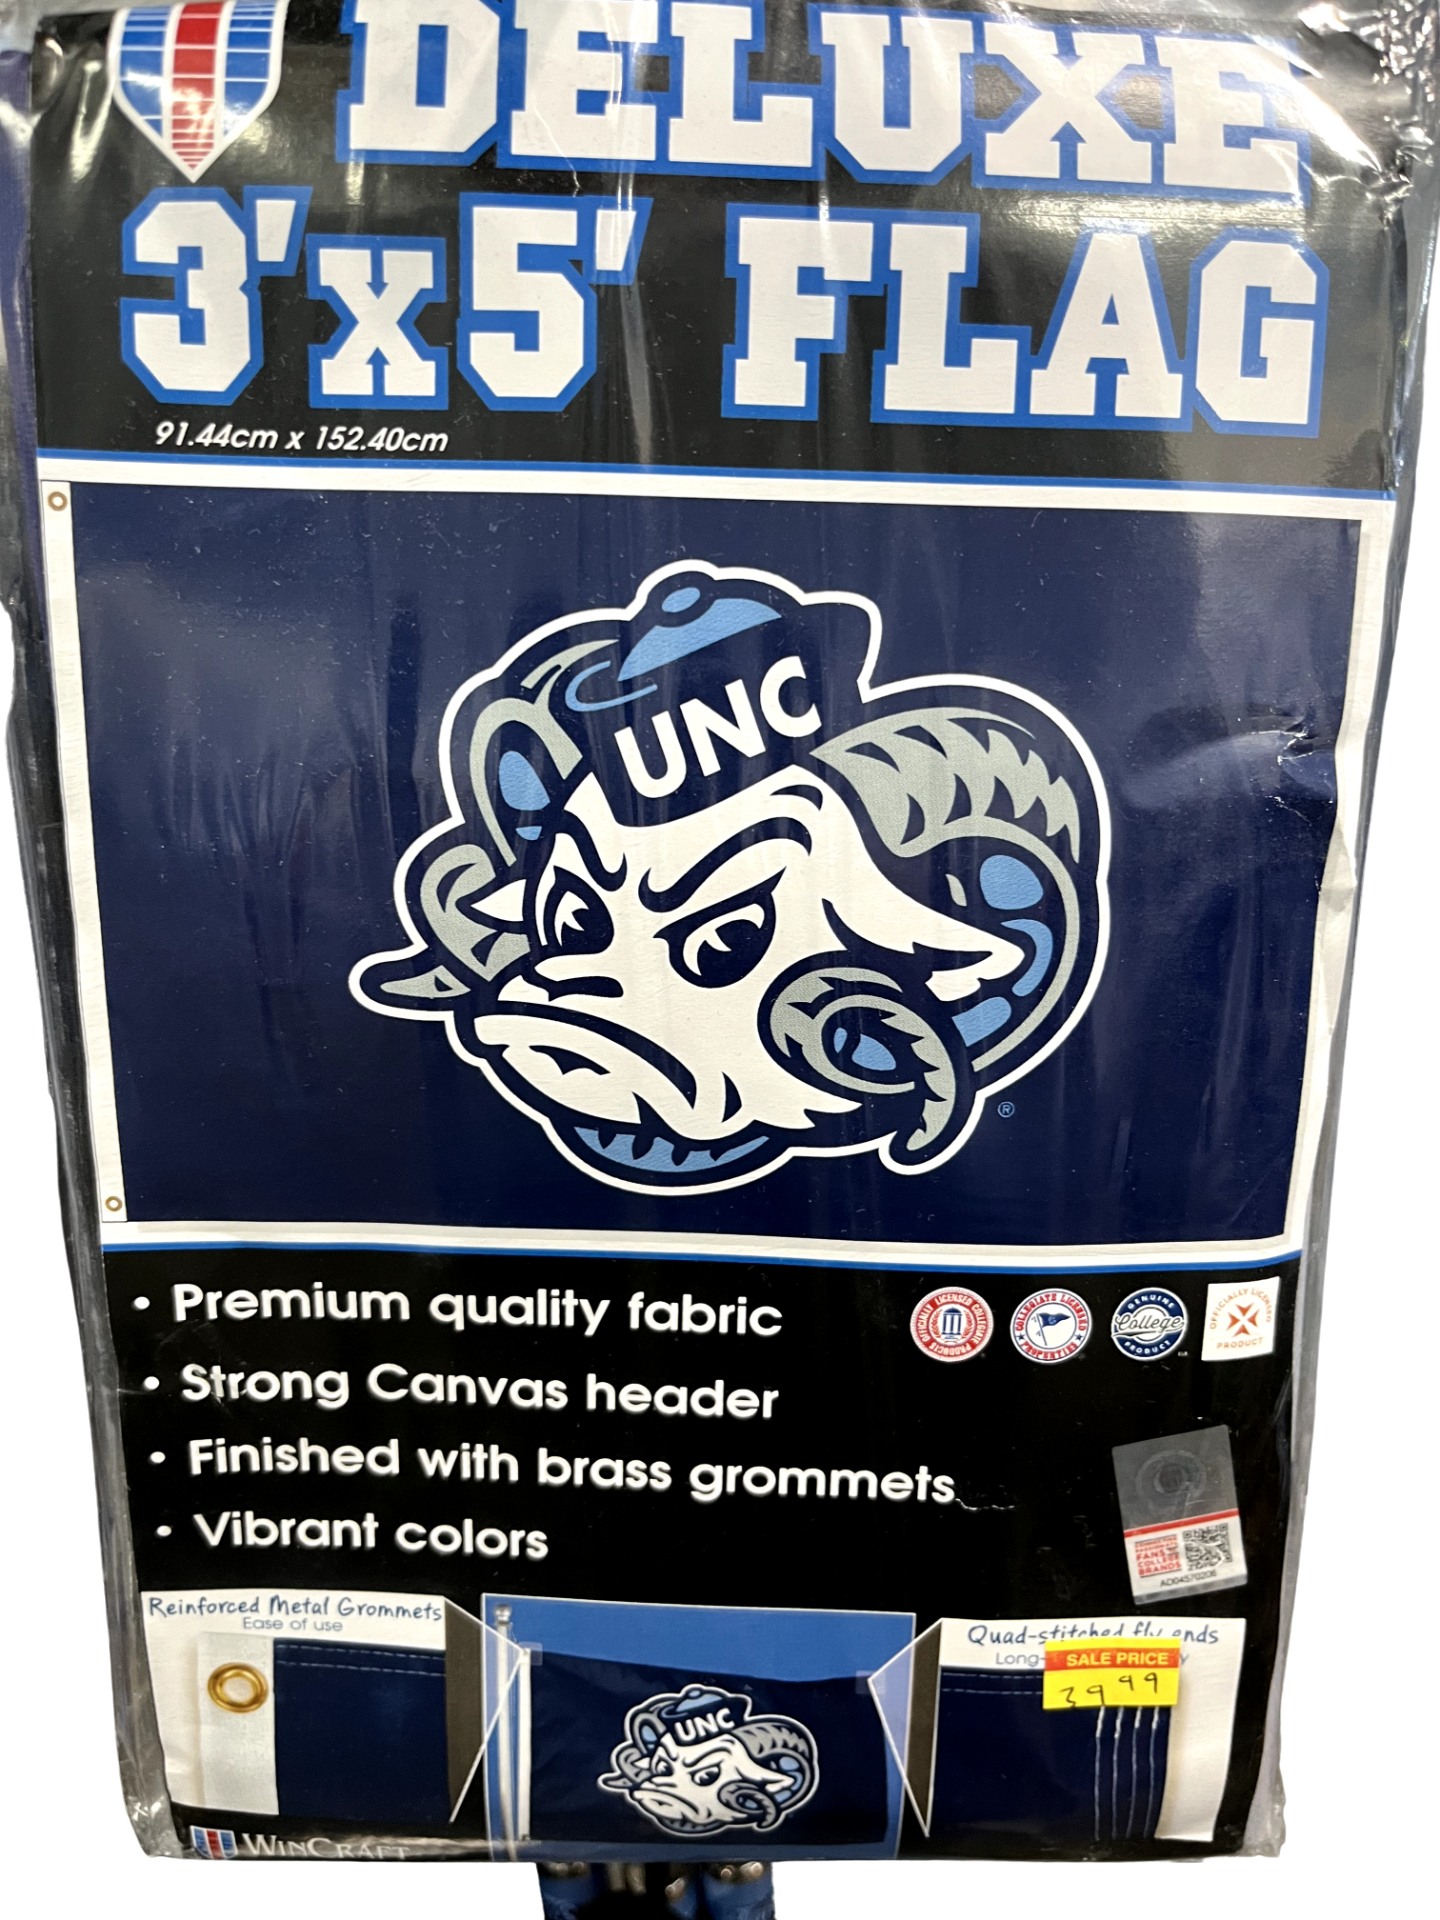 Deluxe 3' x 5' Flag